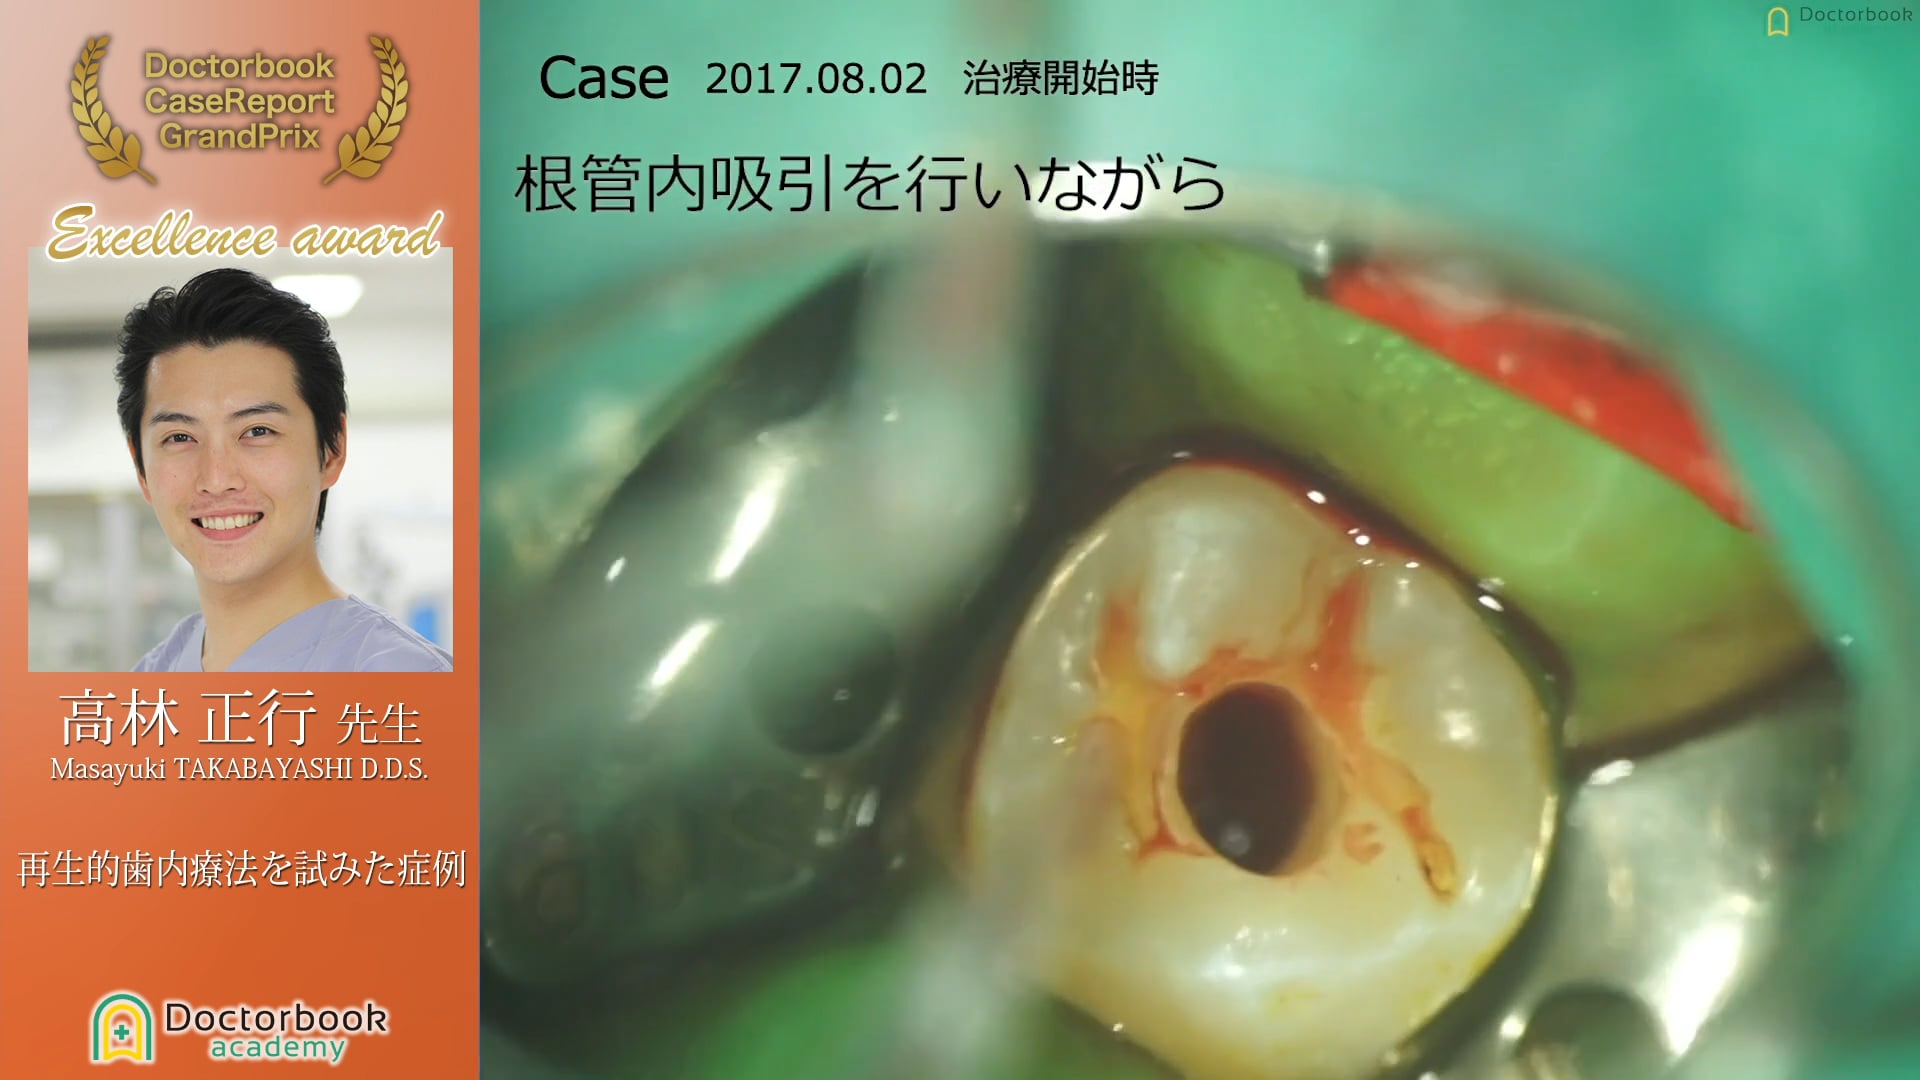 【第3回ケースレポートGP　優秀発表賞】高林 正行先生「再生的歯内療法を試みた症例」